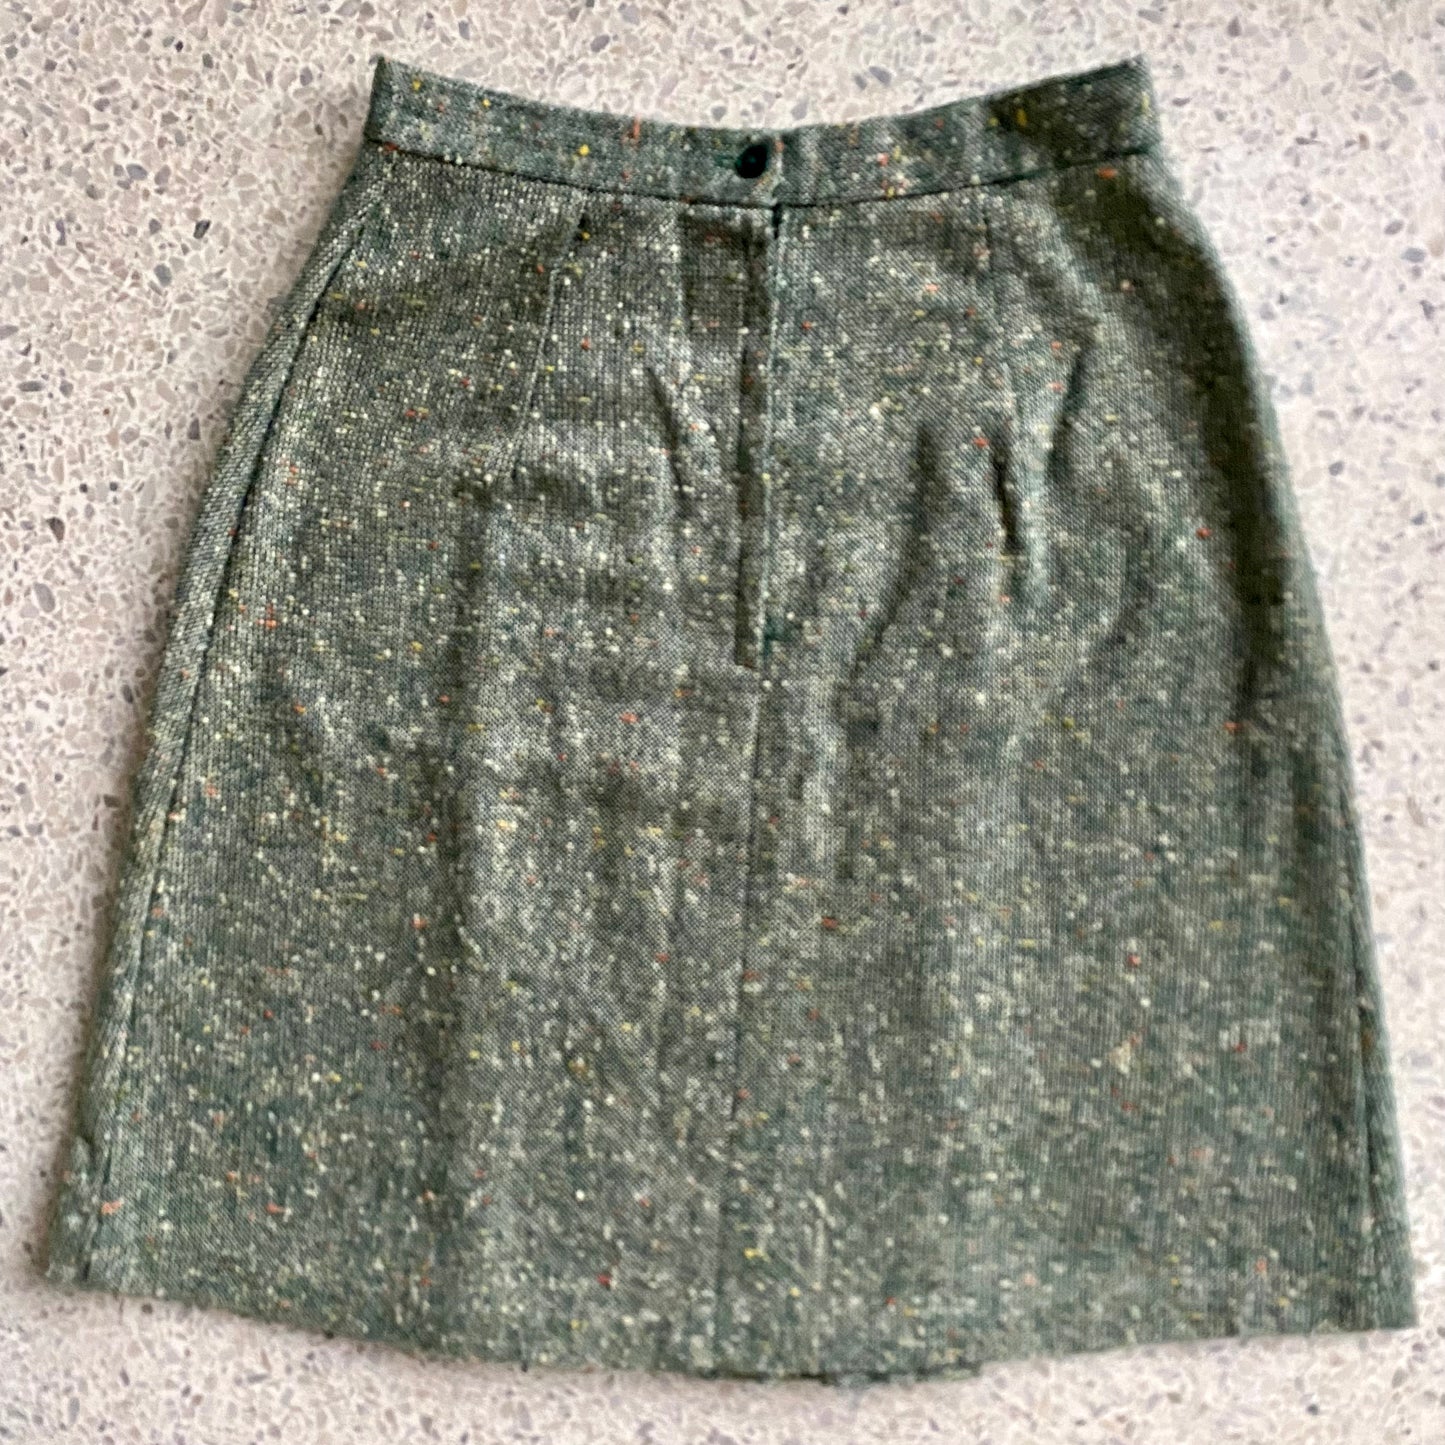 1960s Sears Box Pleat Skirt